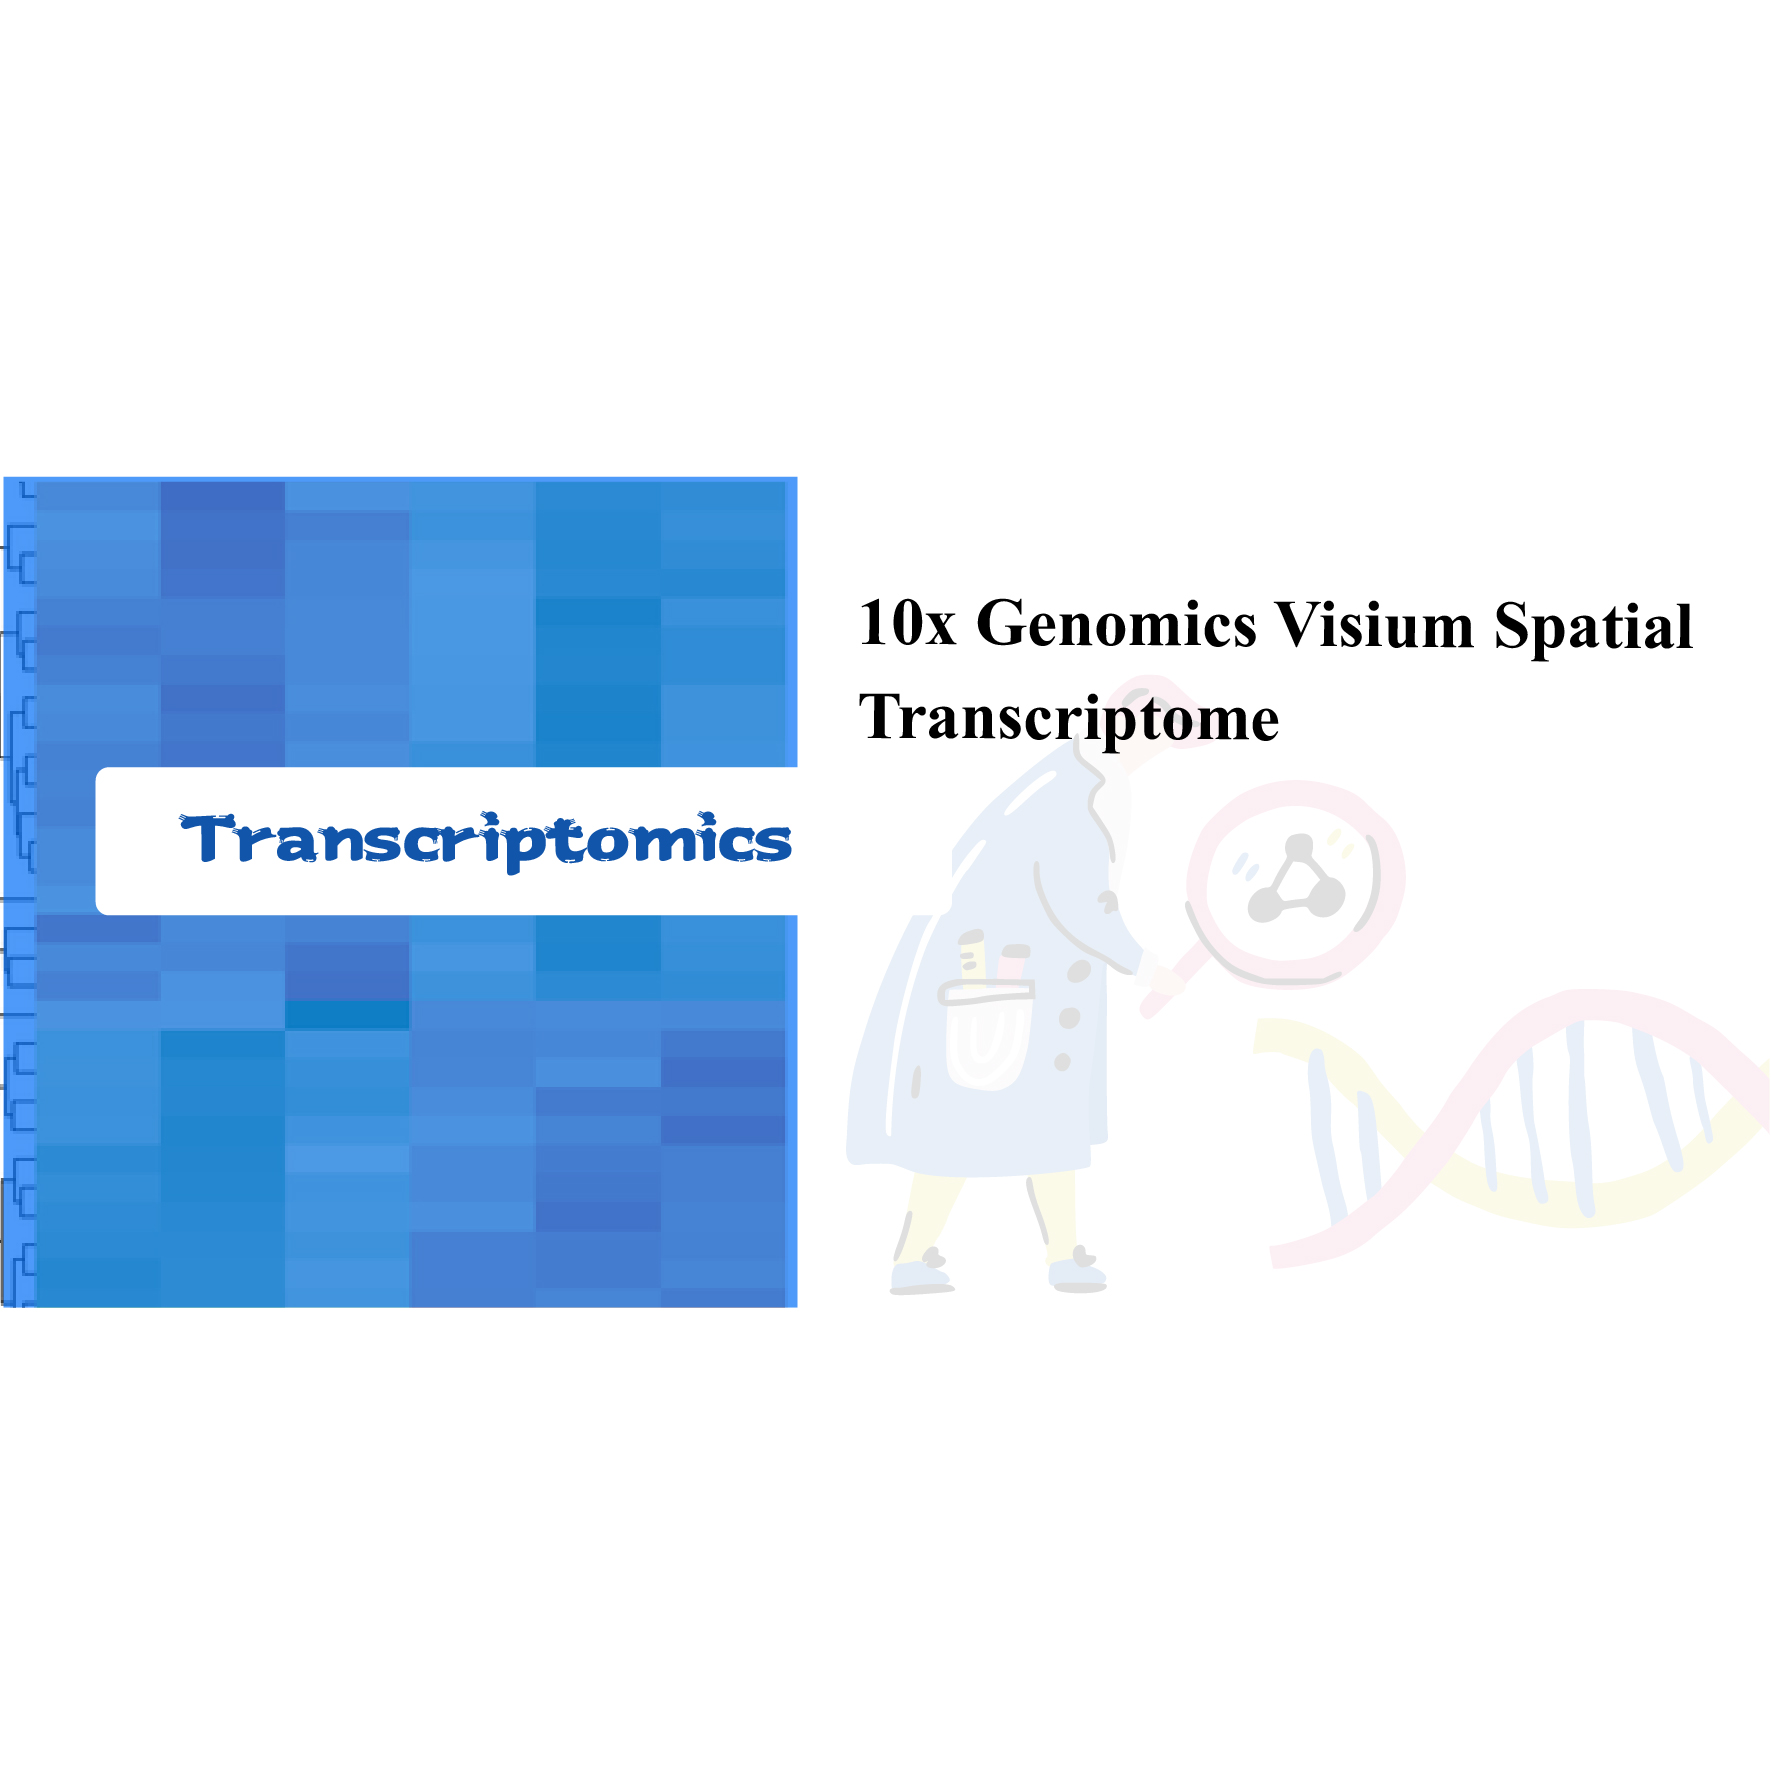 10x Transkriptom Spasial Visium Genomics